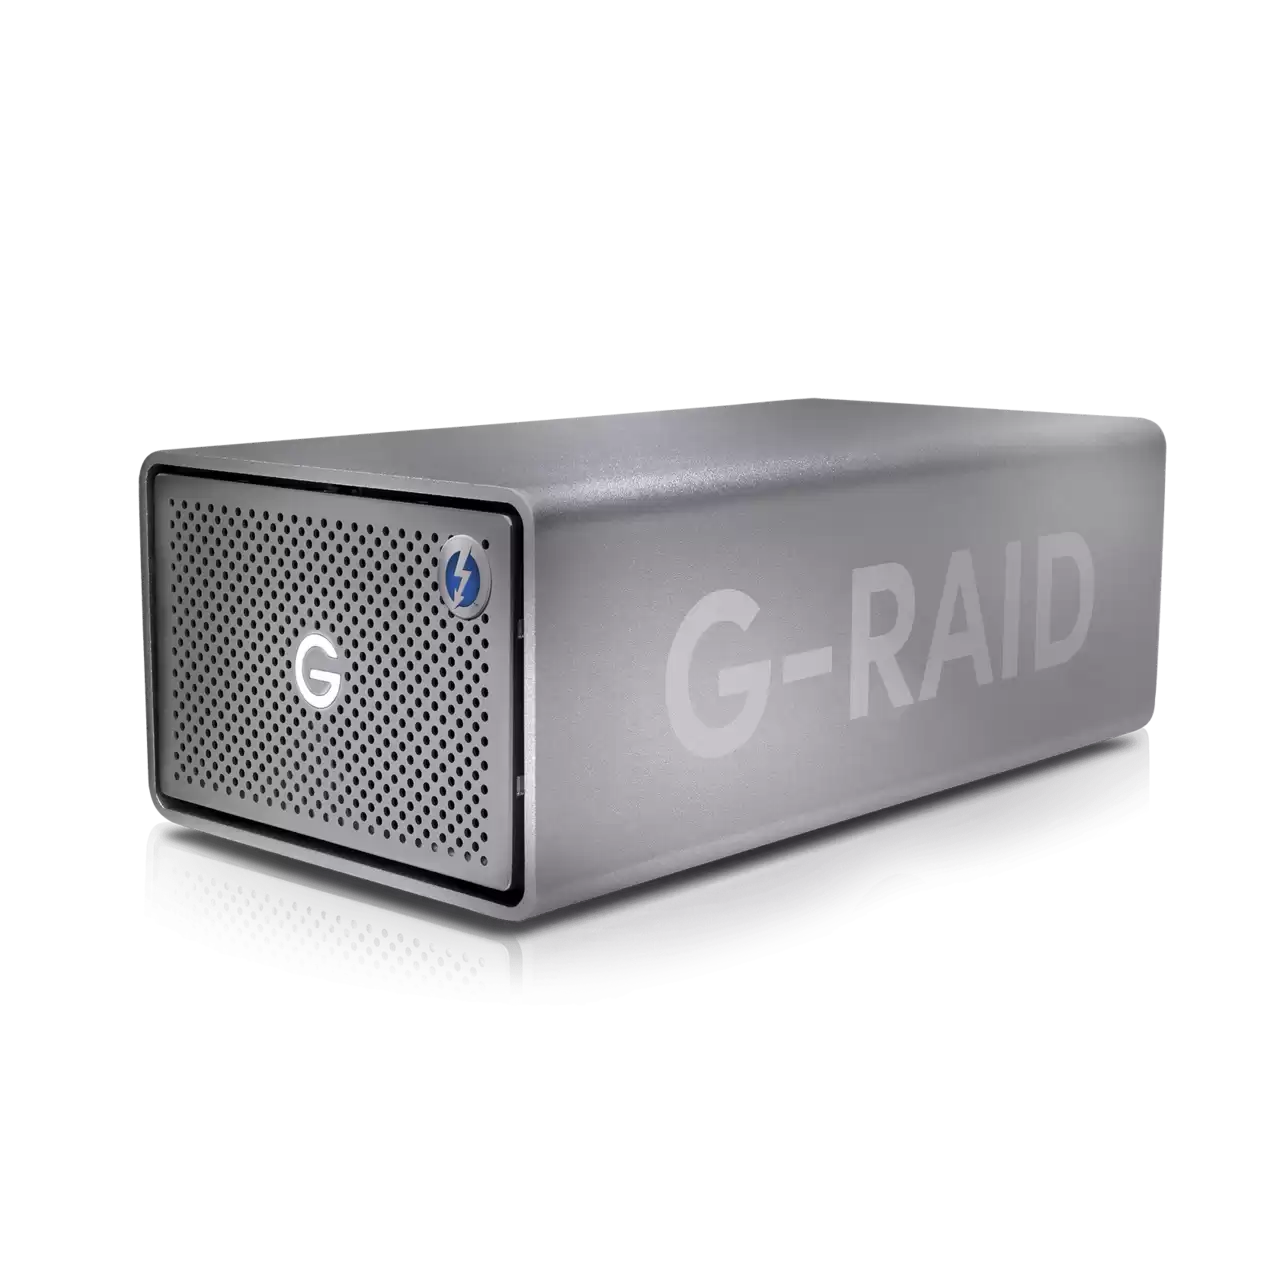 G-RAID 2 24TB USB 